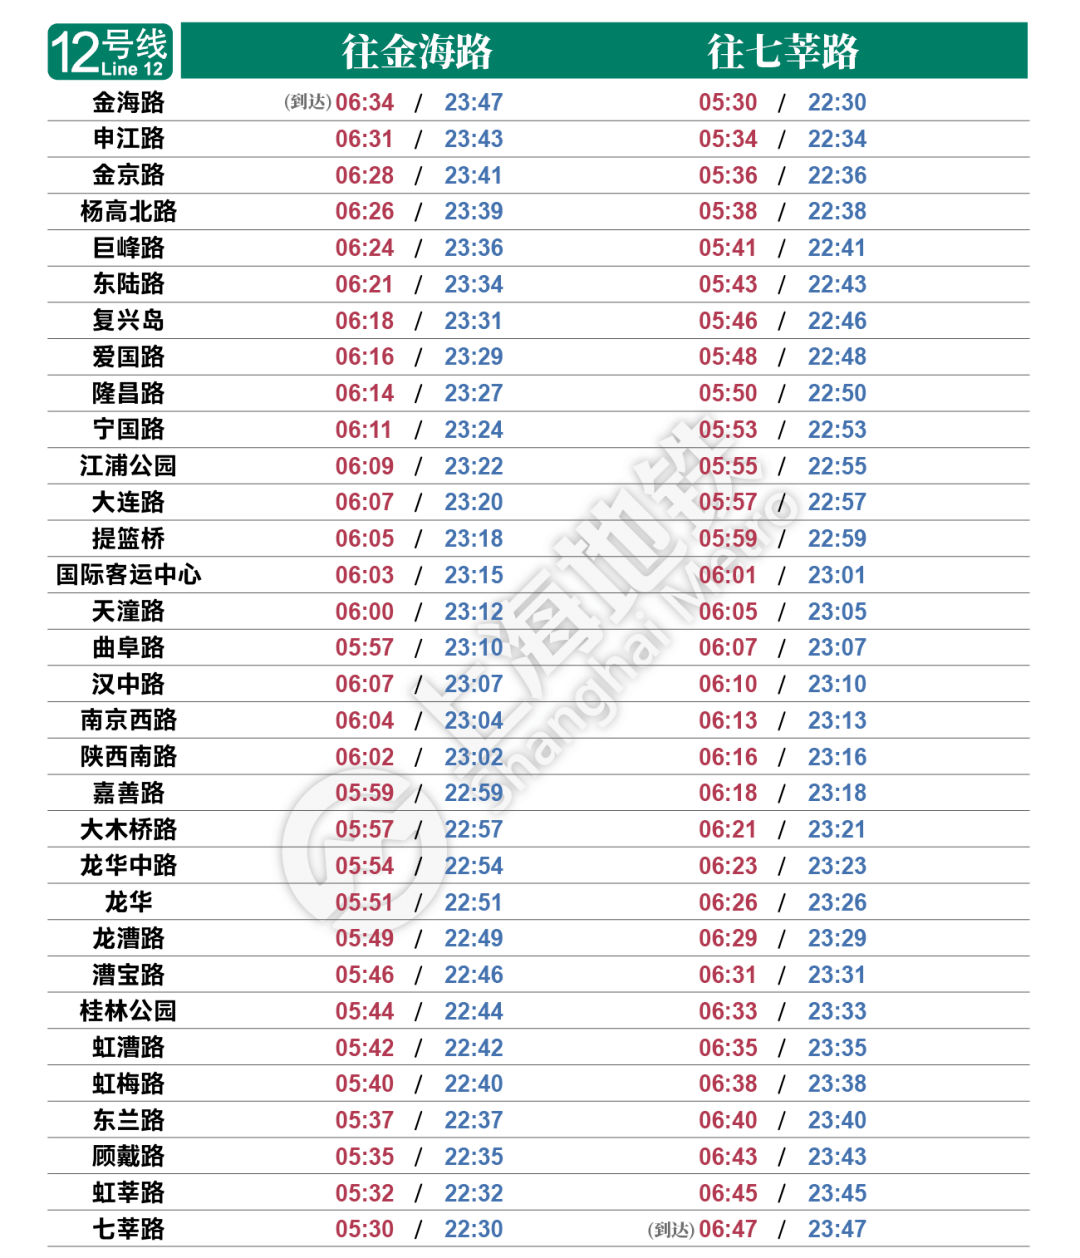 2021年上海地铁列车时刻表!快收藏!